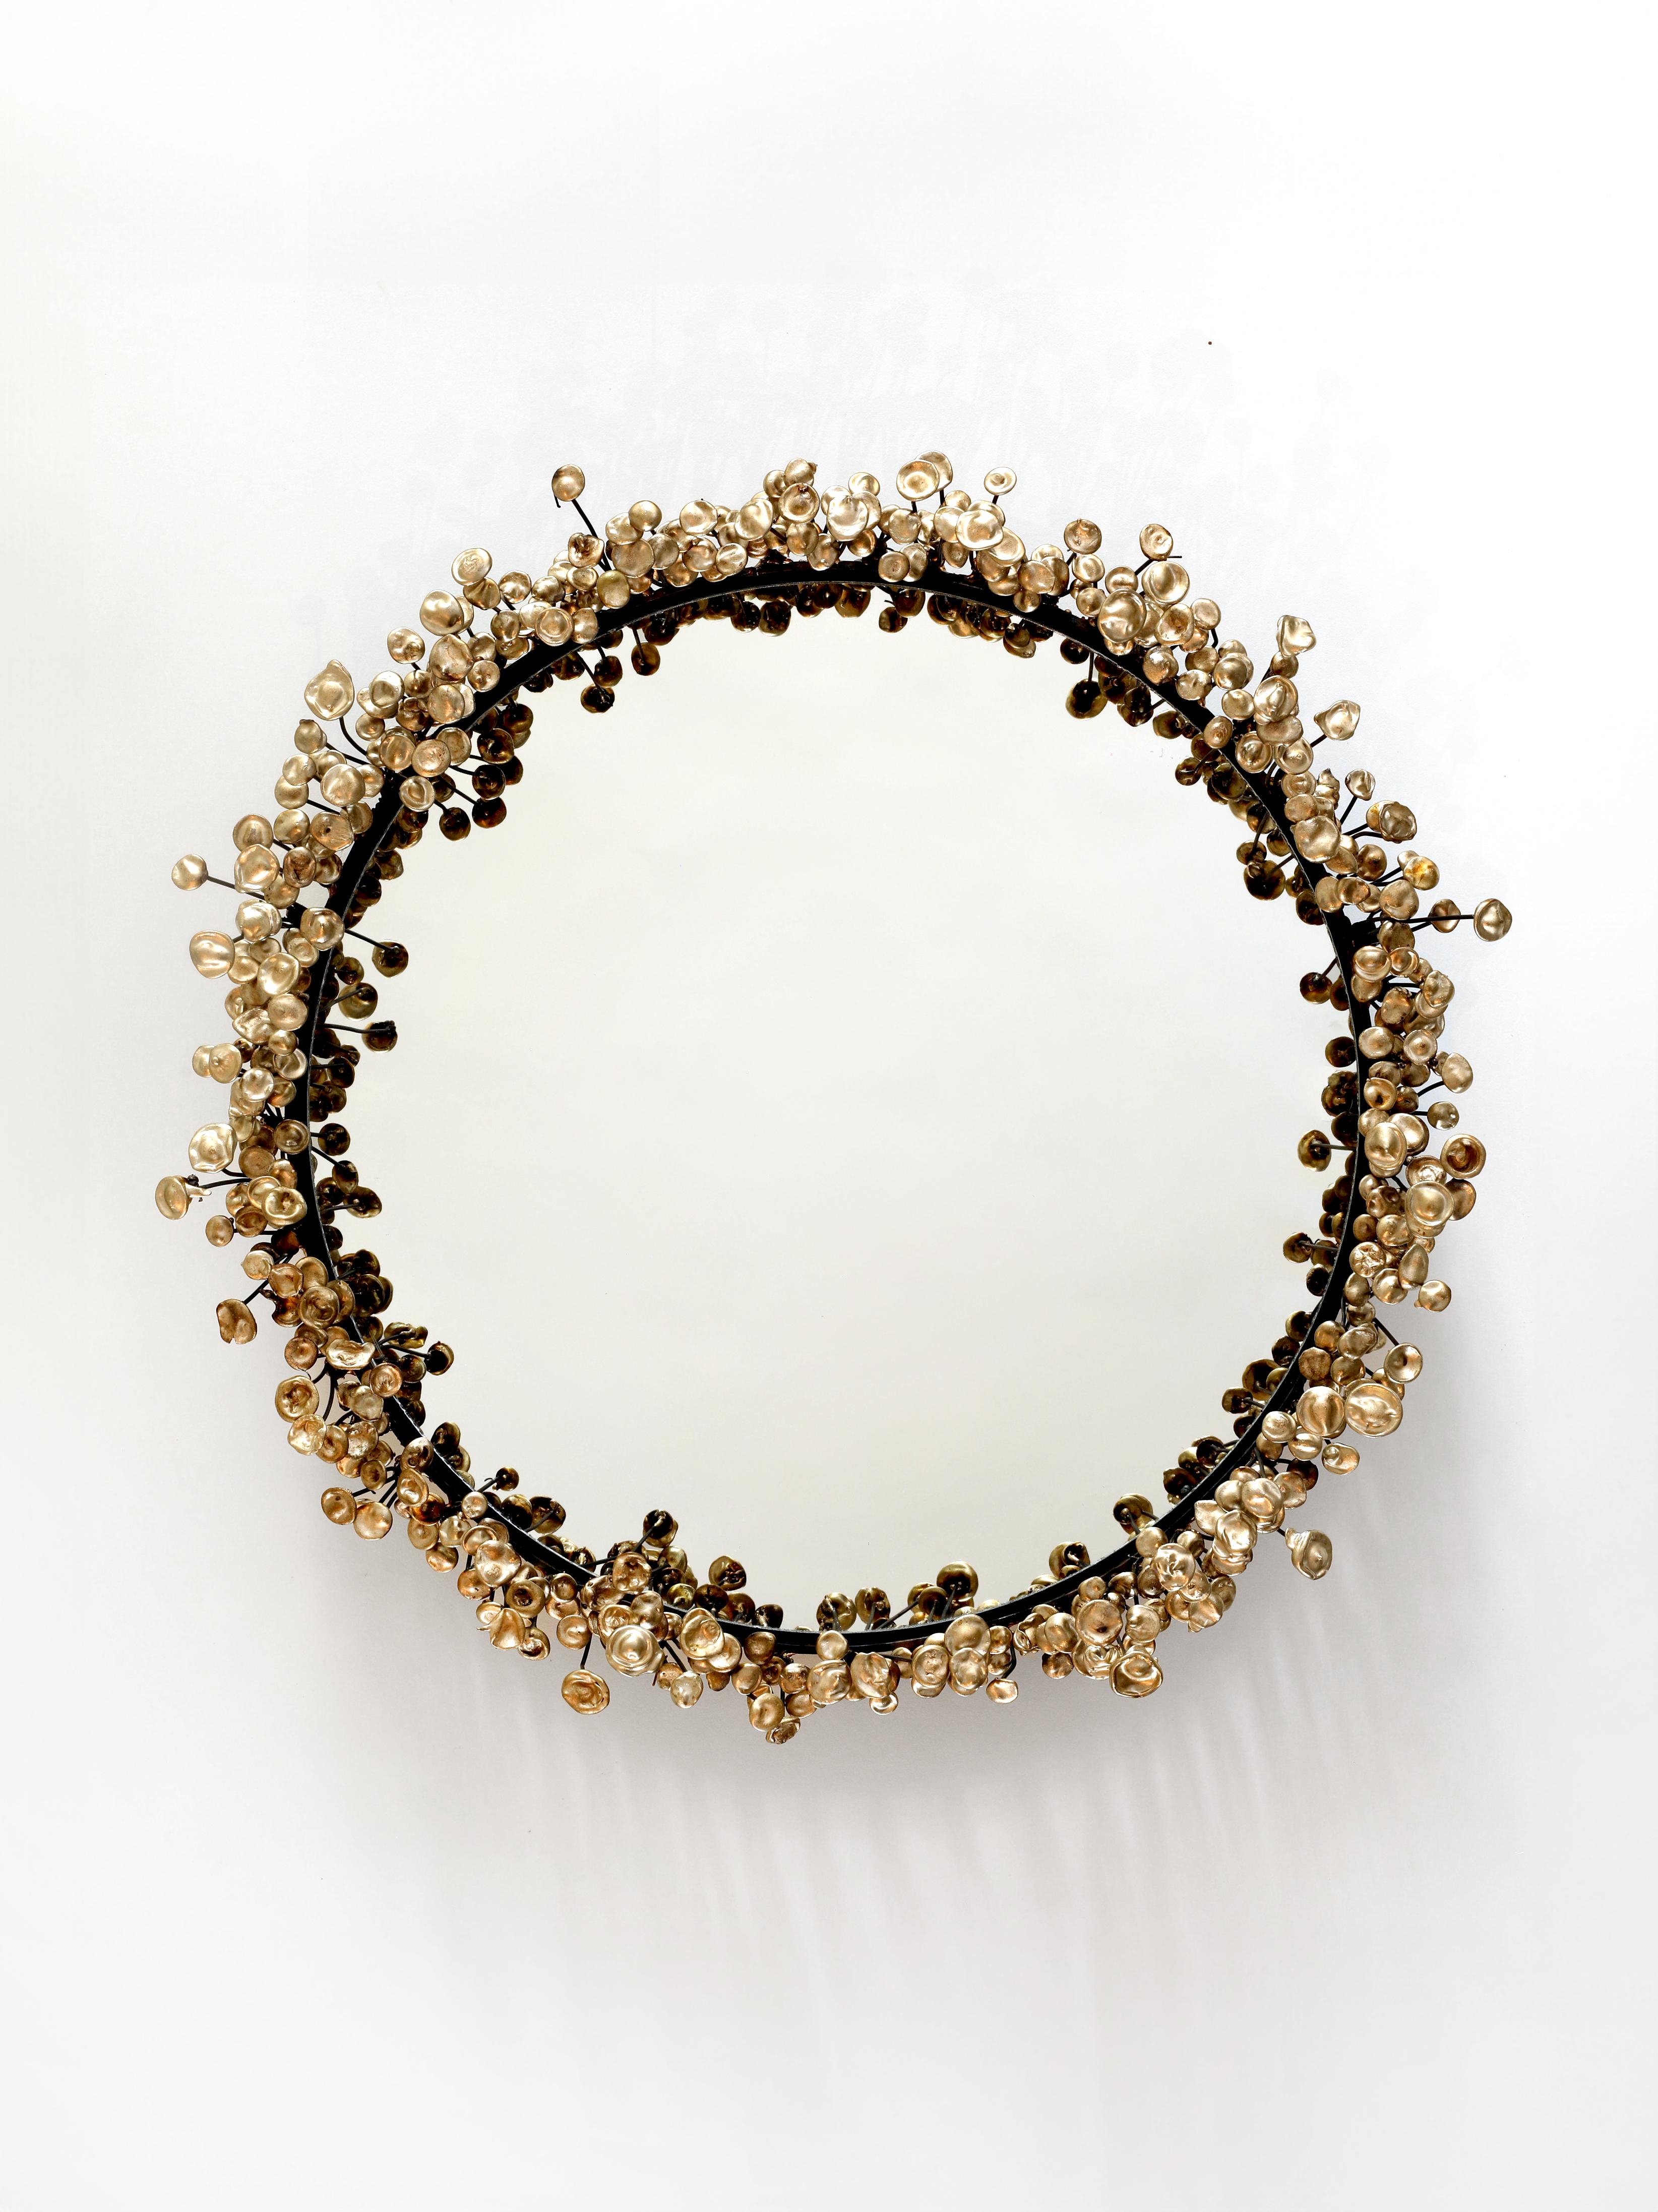 Der Flower Mirror besteht aus Hunderten von einzigartigen Bronzeblüten, die auf einen Stahlrahmen geschweißt sind. Jedes Stück ist ein Unikat und kann daher leicht von den Abbildungen abweichen.